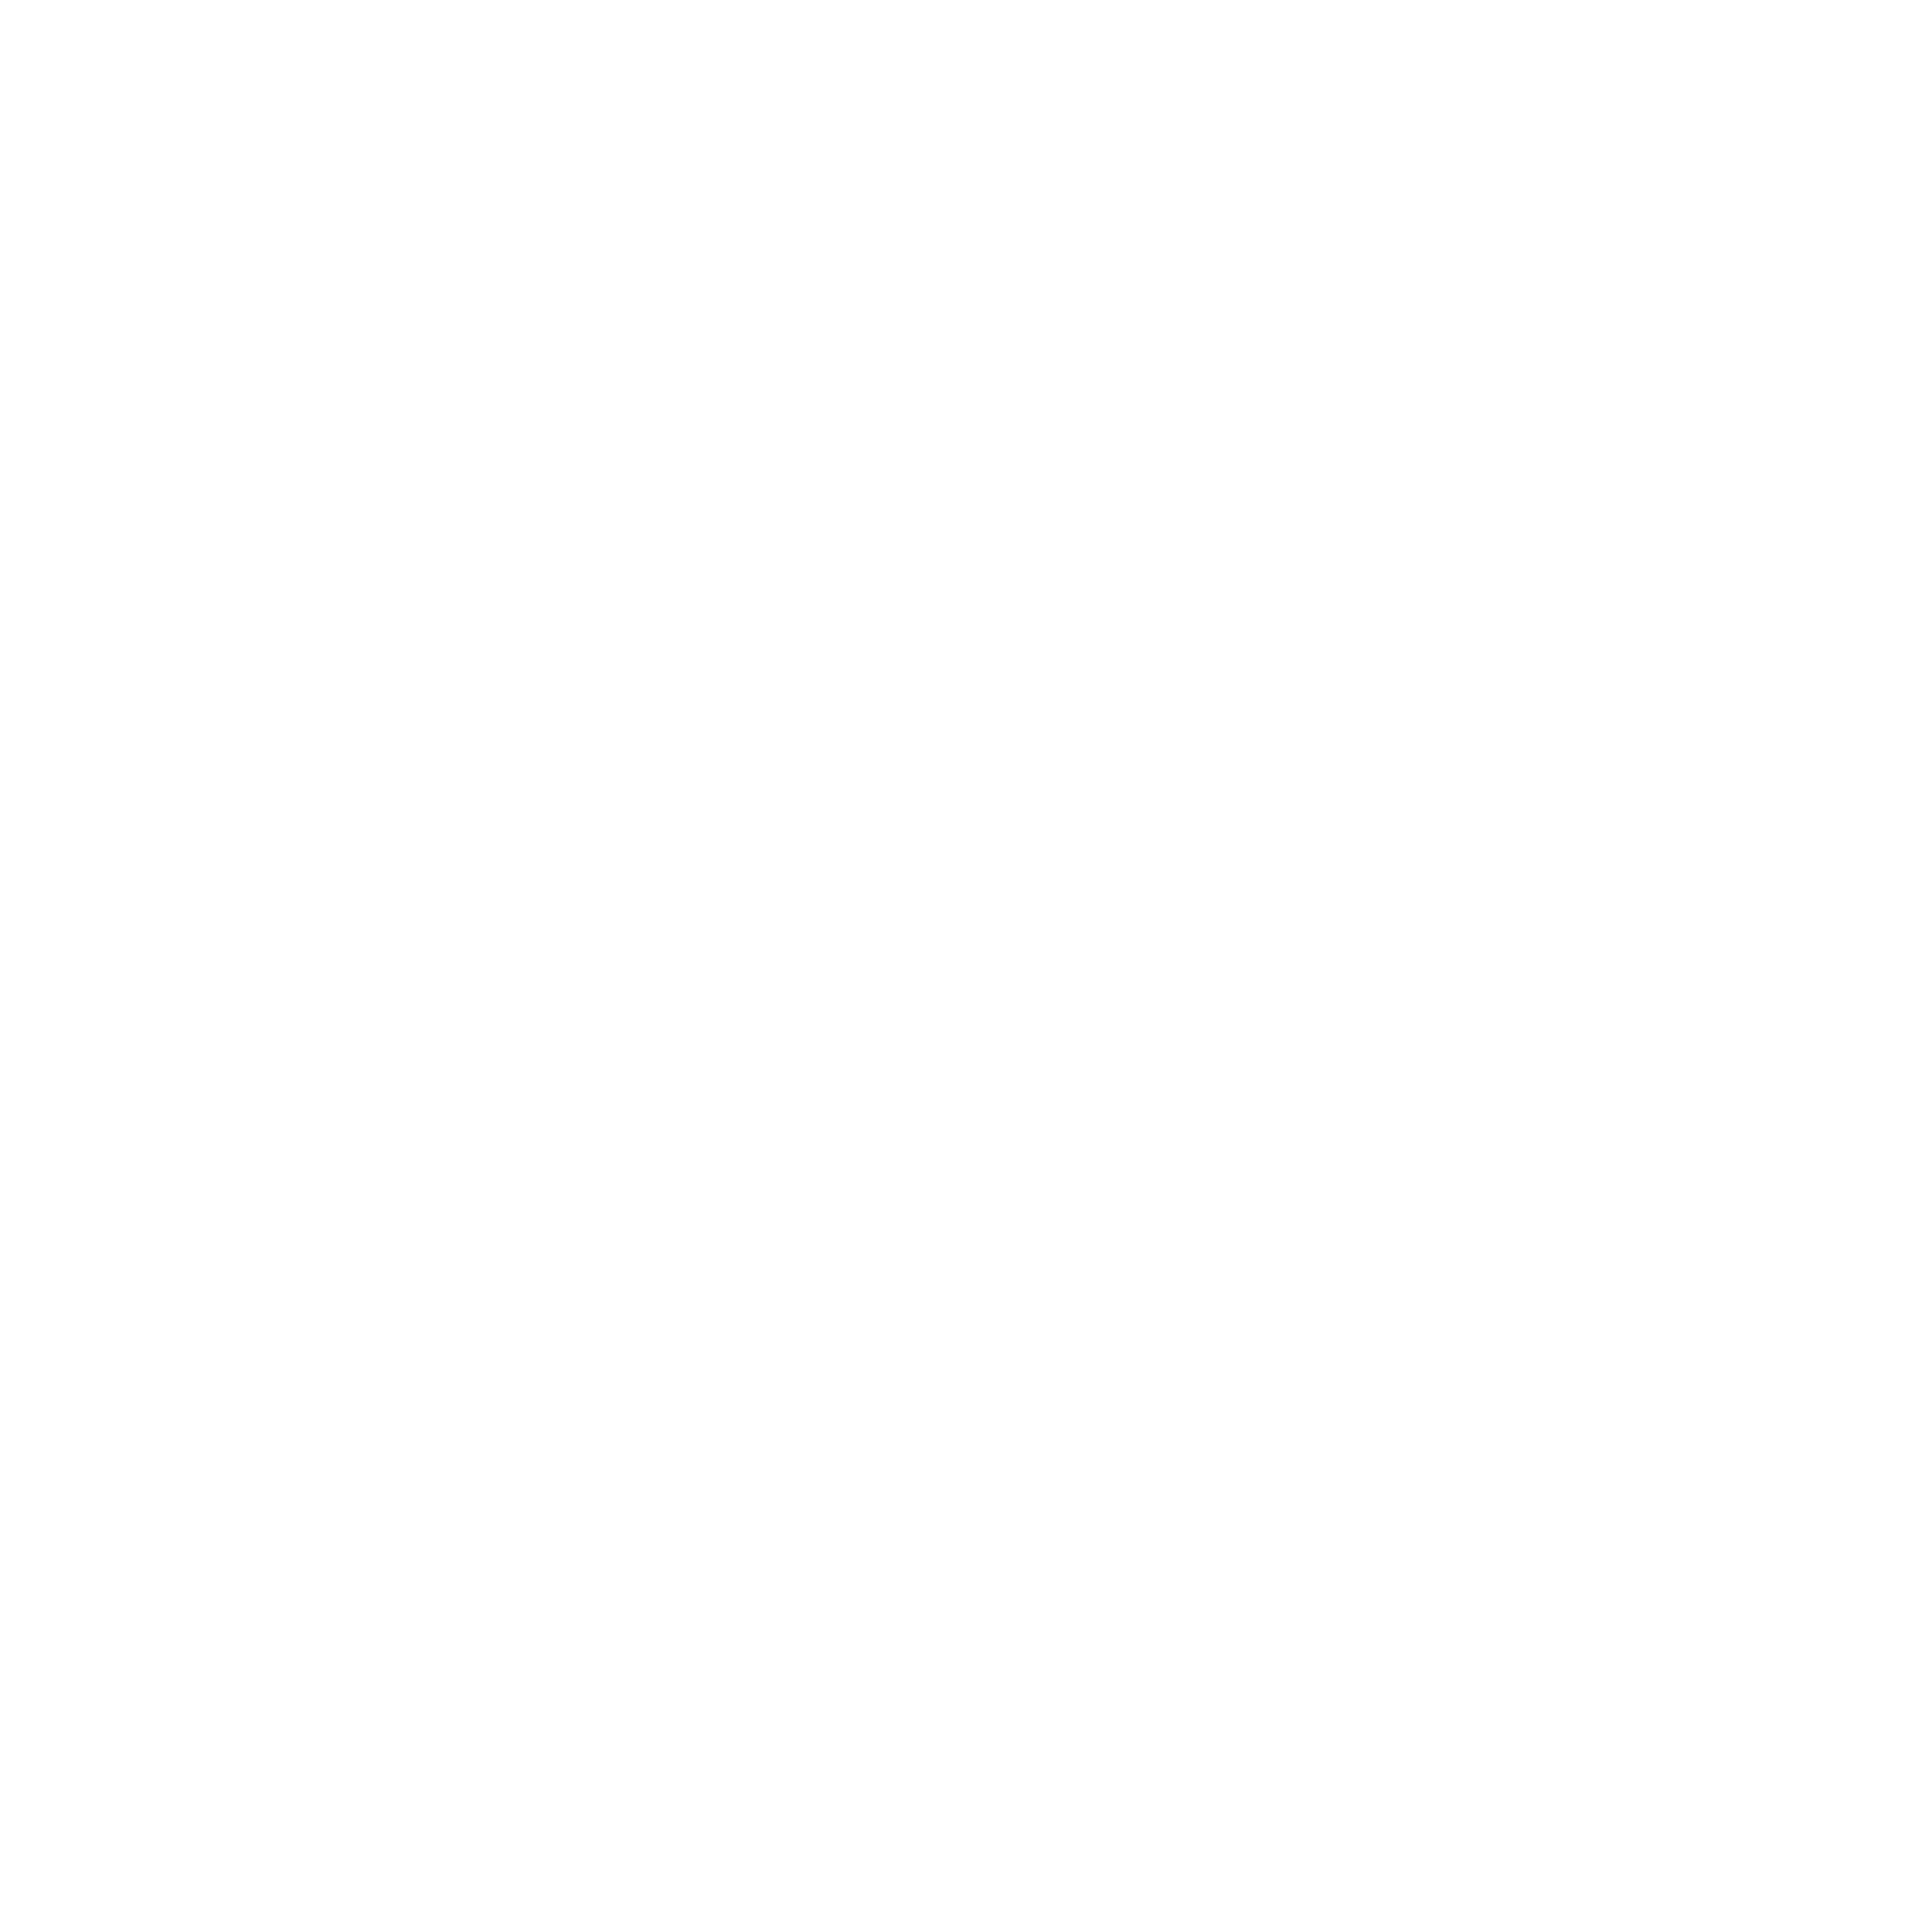 Yoga association